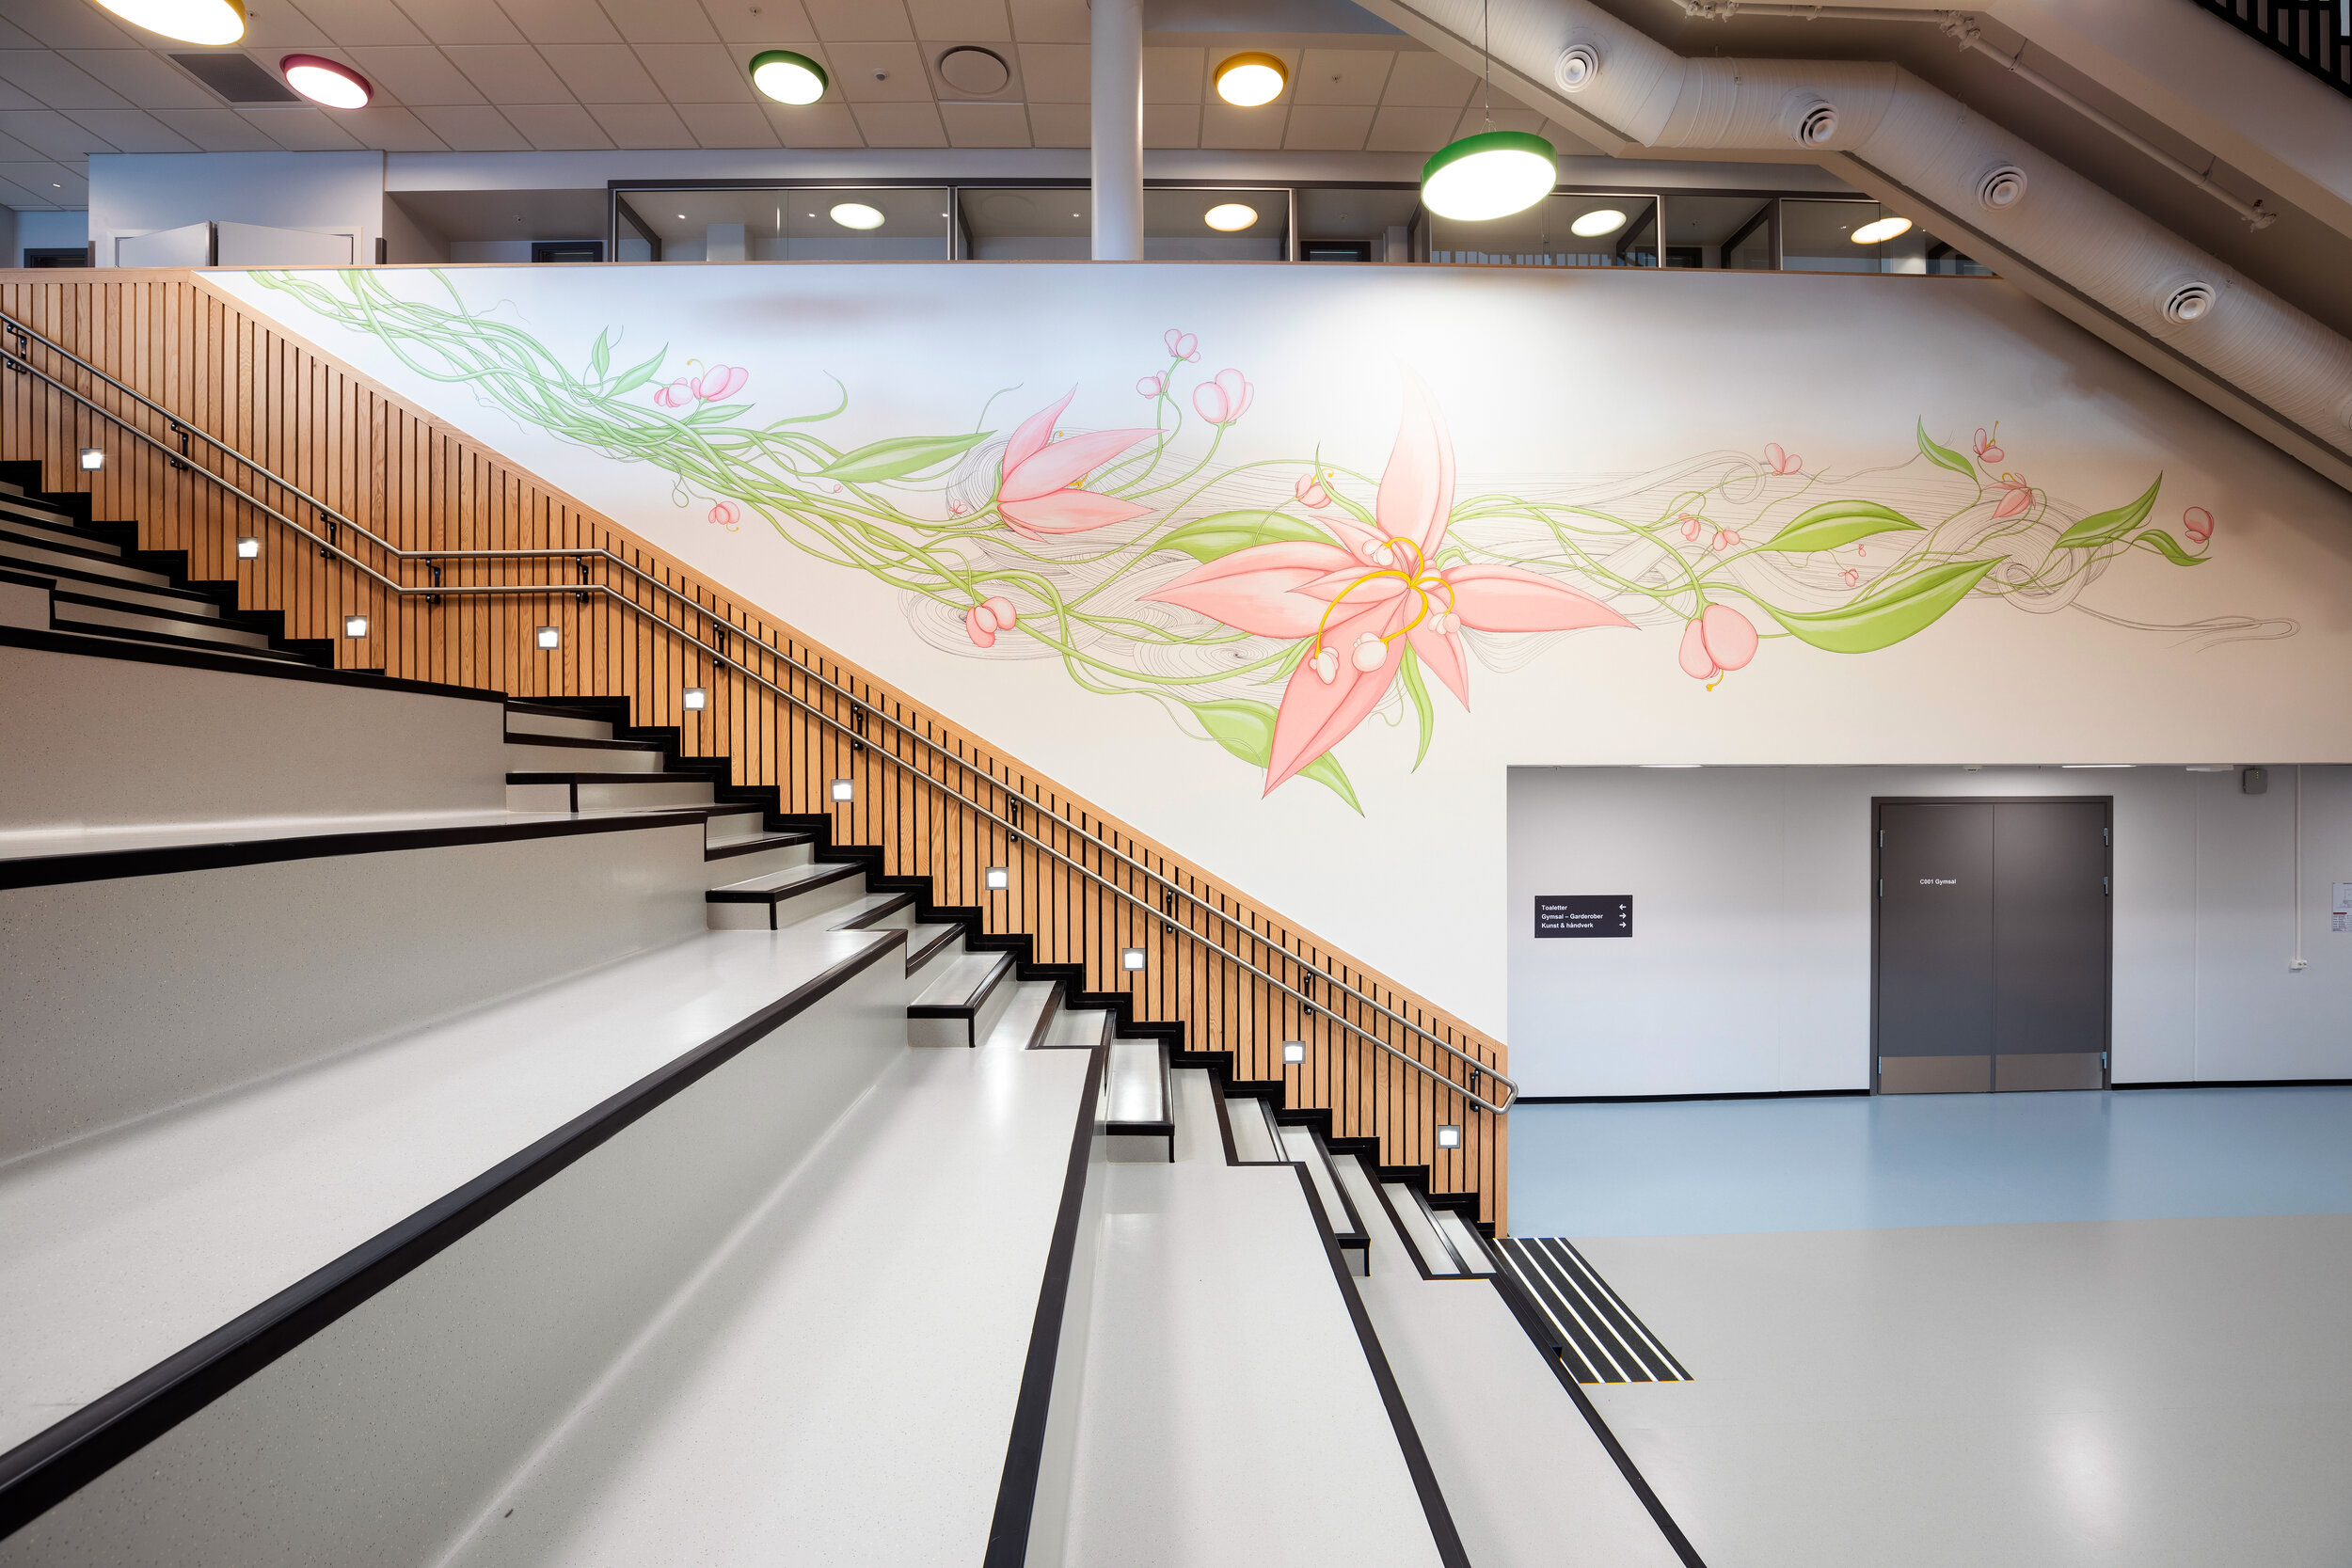  Installation view   Flowering , Harstad Elementary School, 2018    Photo:  Kjell Ove Storvik 